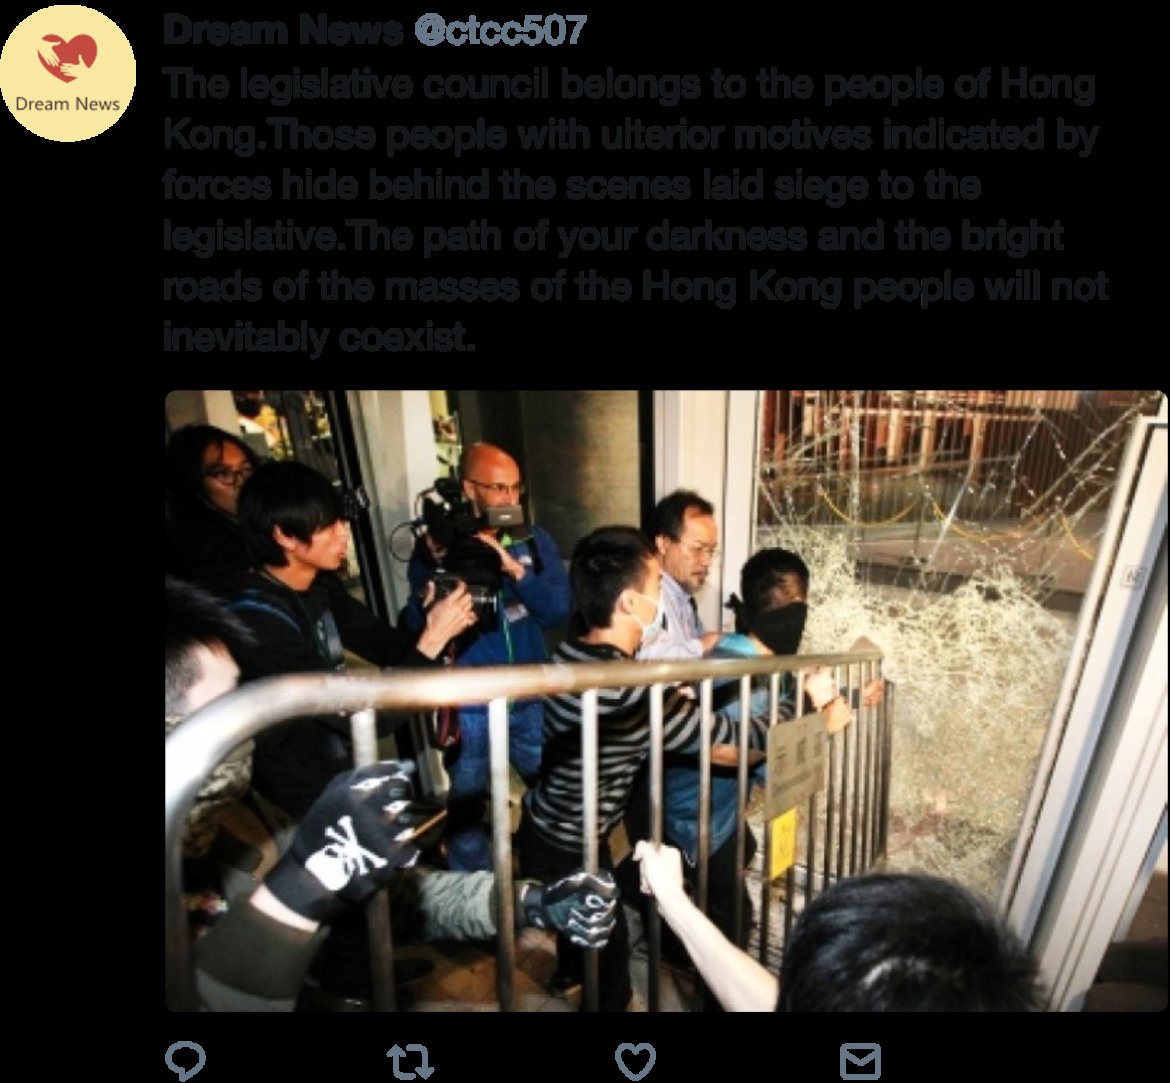 Хлебарките на Хонконг - как пропагандата на Пекин се опита да задуши протестите